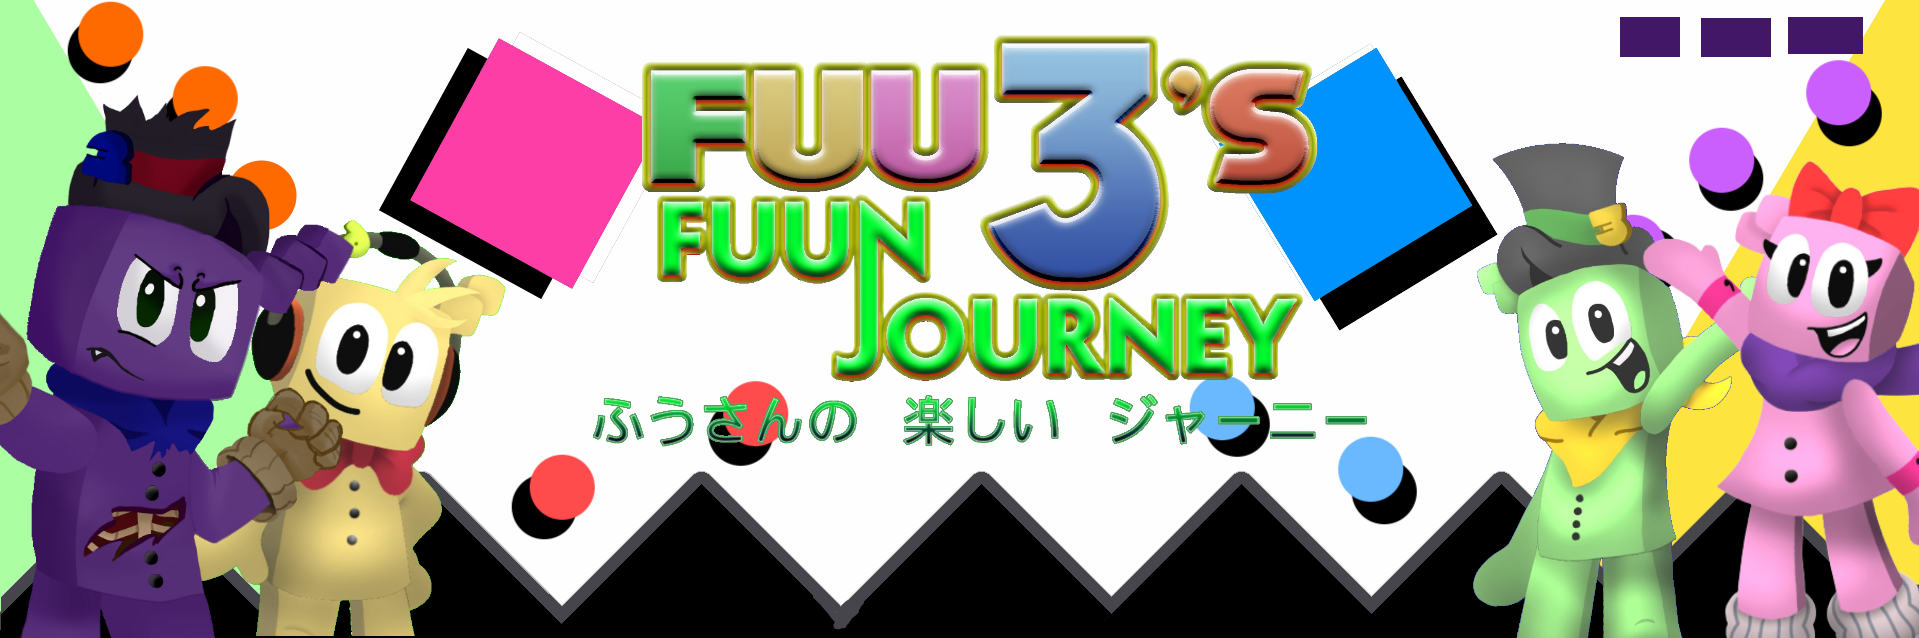 Fuu3's Fuun Journey